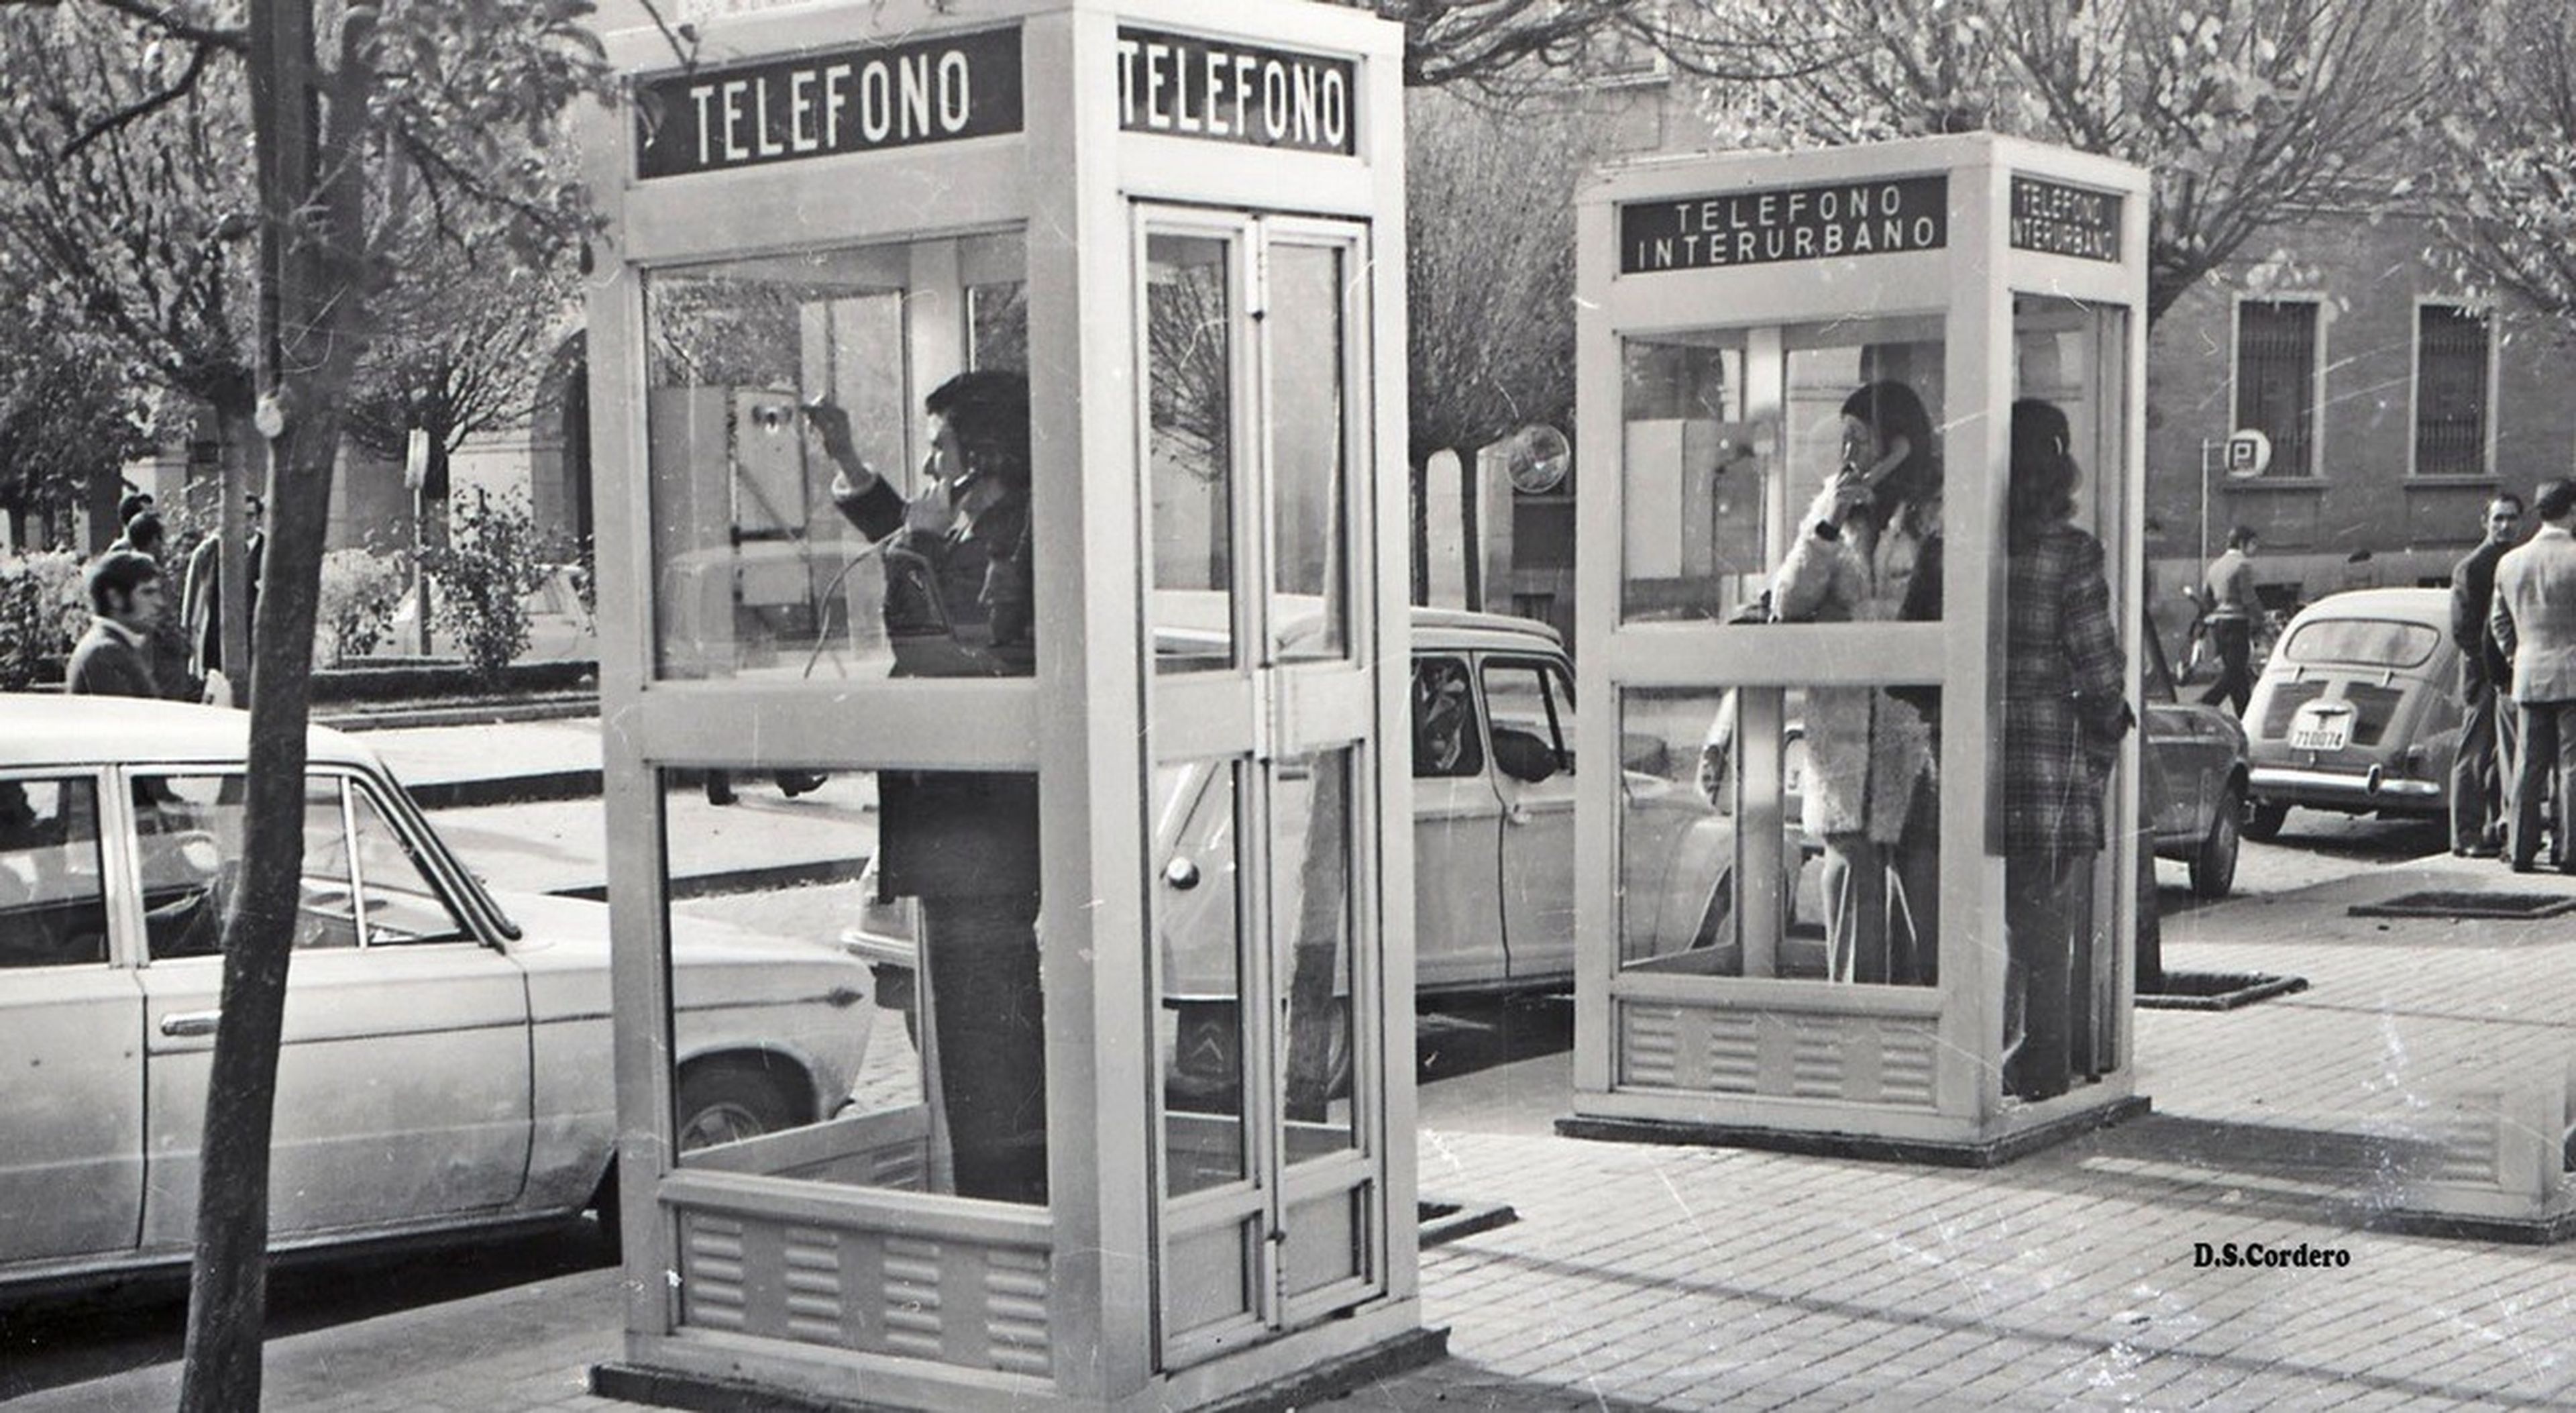 El gobierno obliga a Telefónica a mantener las cabinas telefónicas en 2019